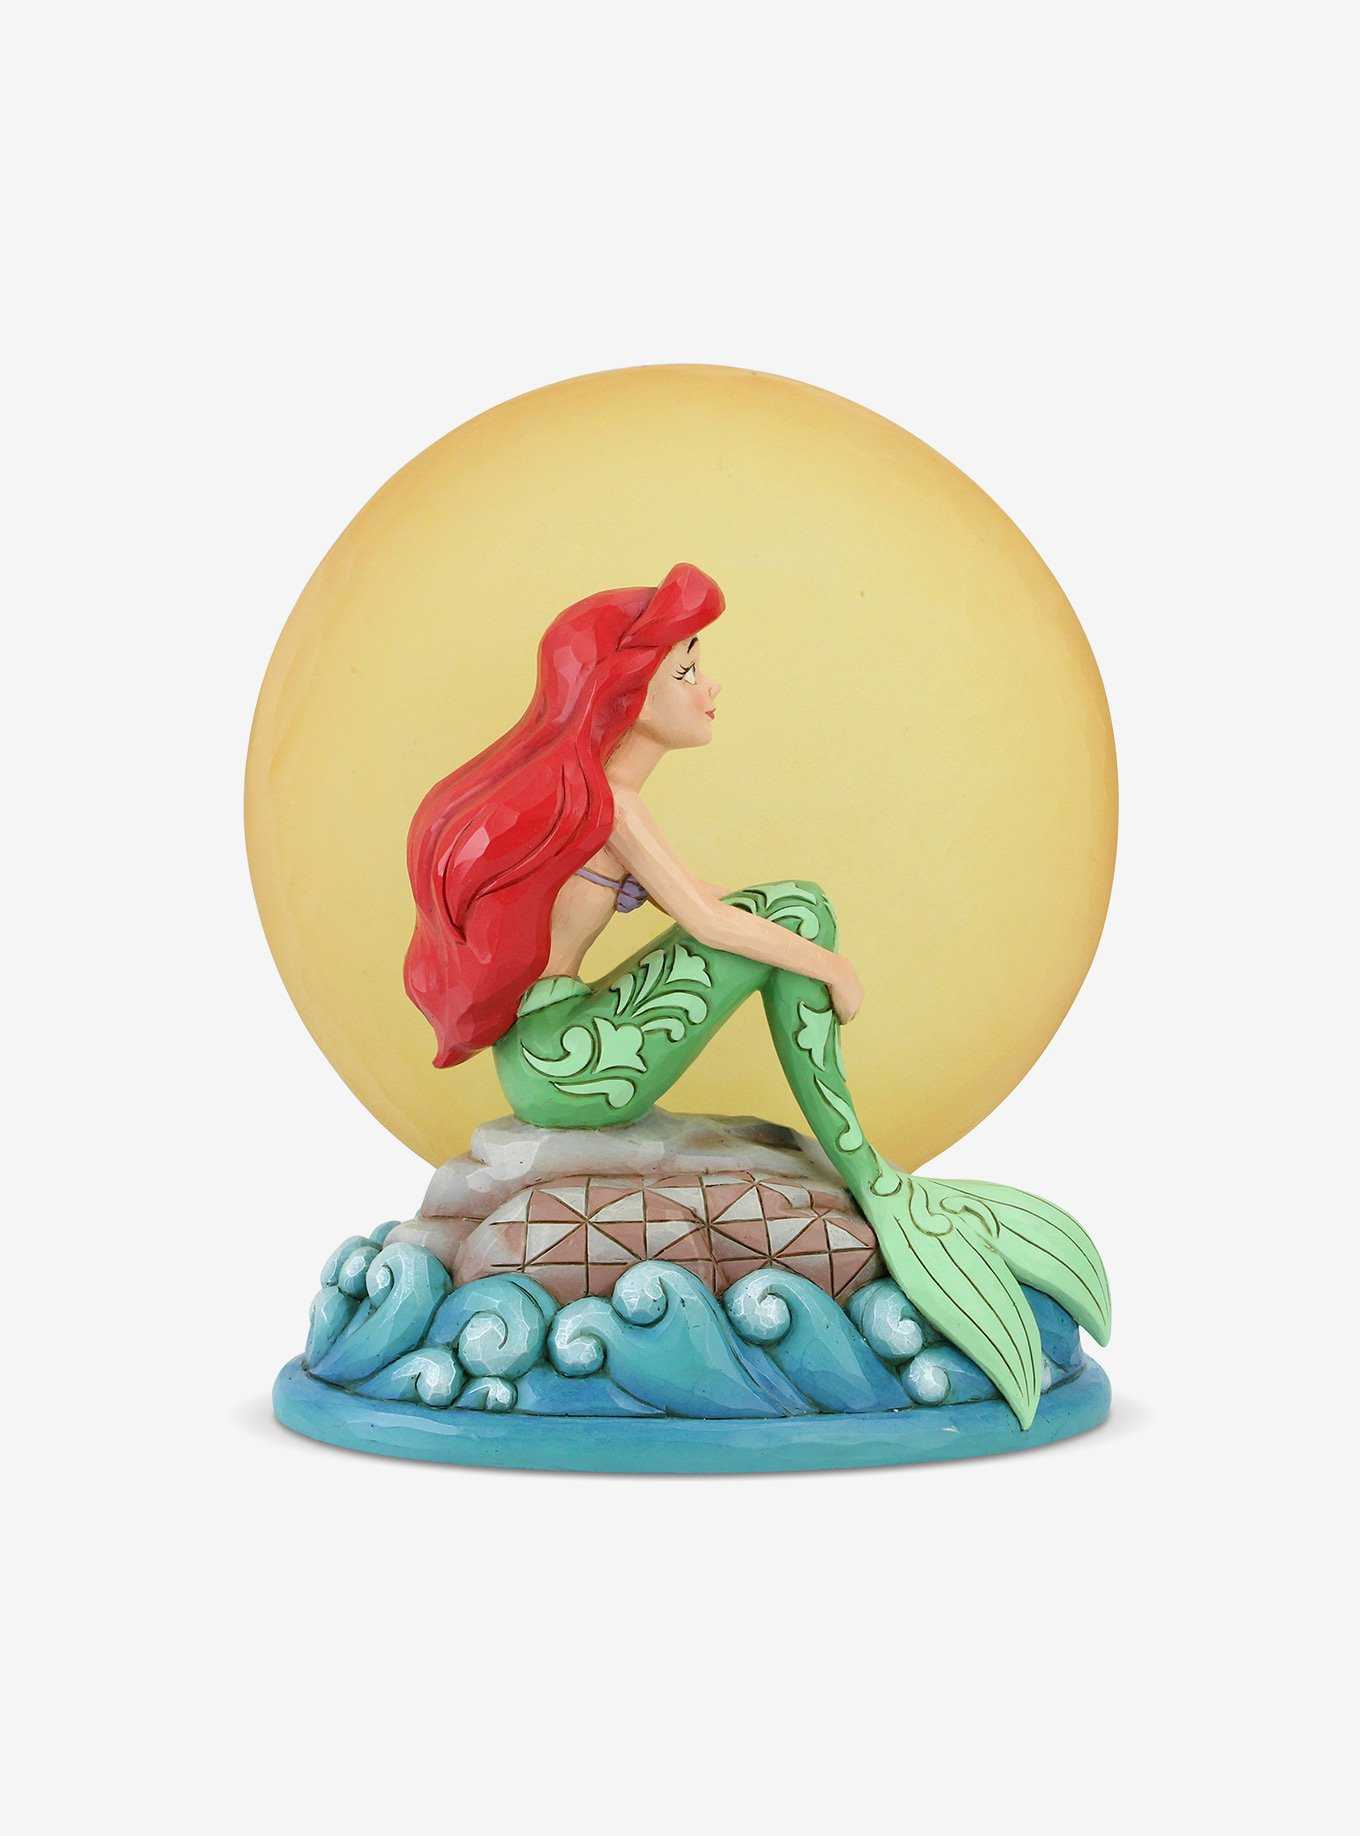 Disney The Little Mermaid Ariel by Moon Figure, , hi-res